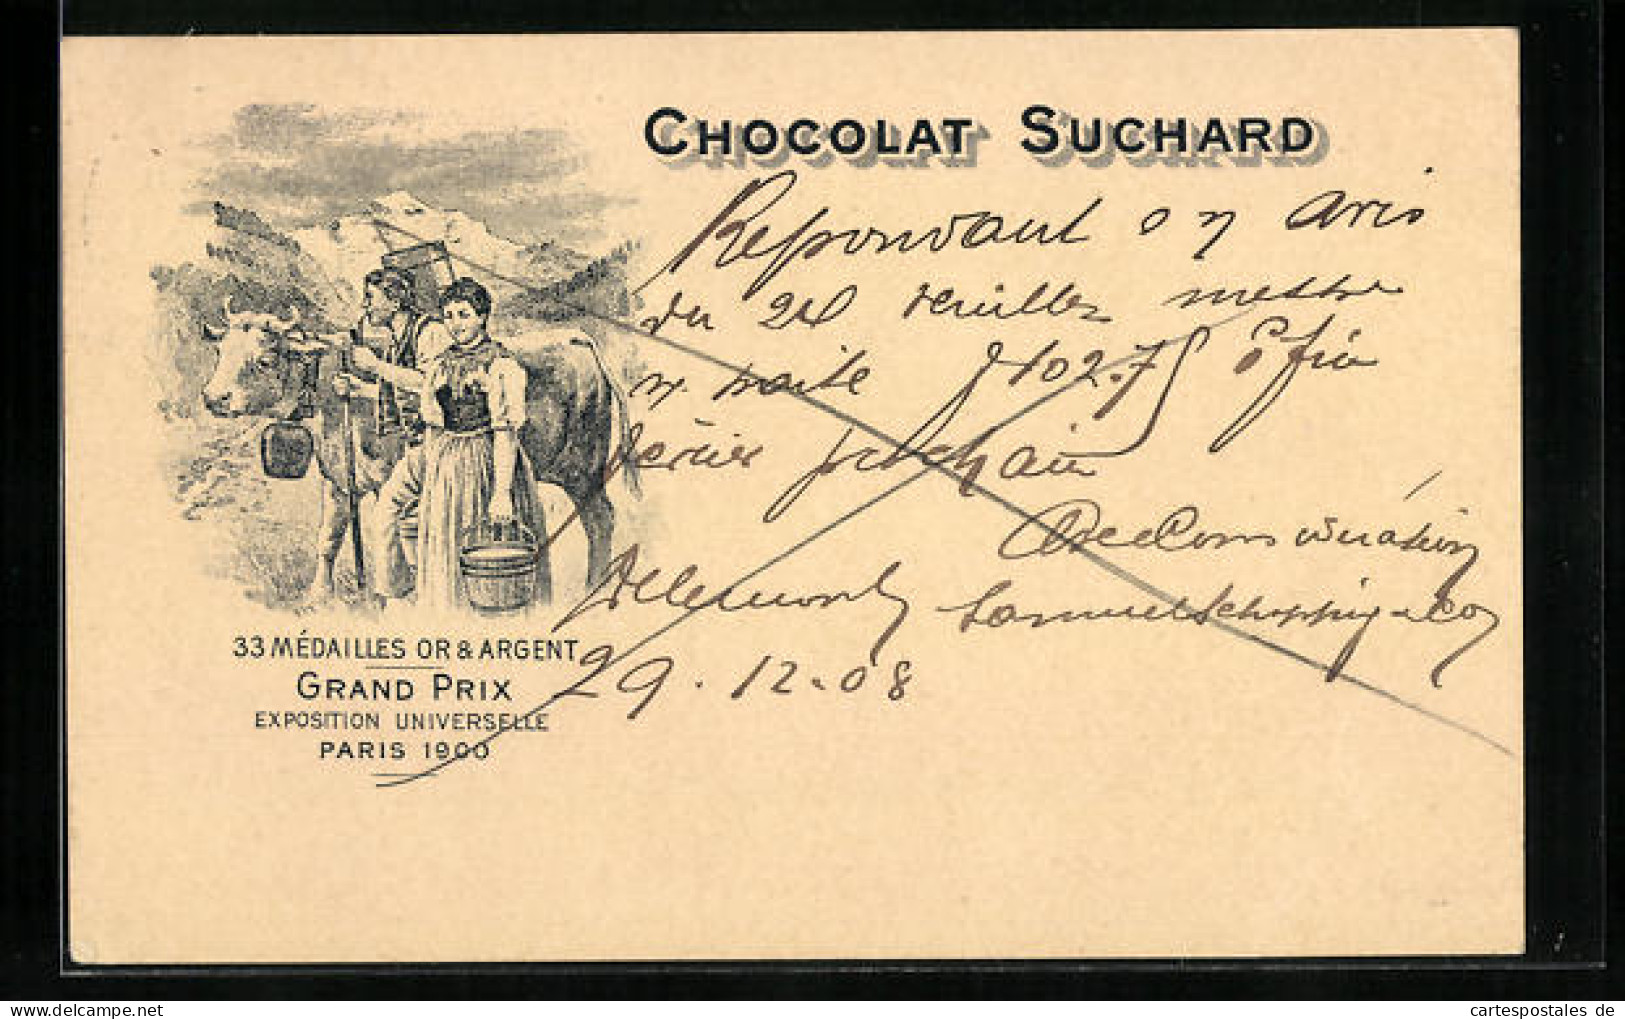 AK Reklame Für Chocolat Suchard, Bauernpaar Mit Milchkuh, Grand Prix Paris 1900, Ganzsache  - Cultivation